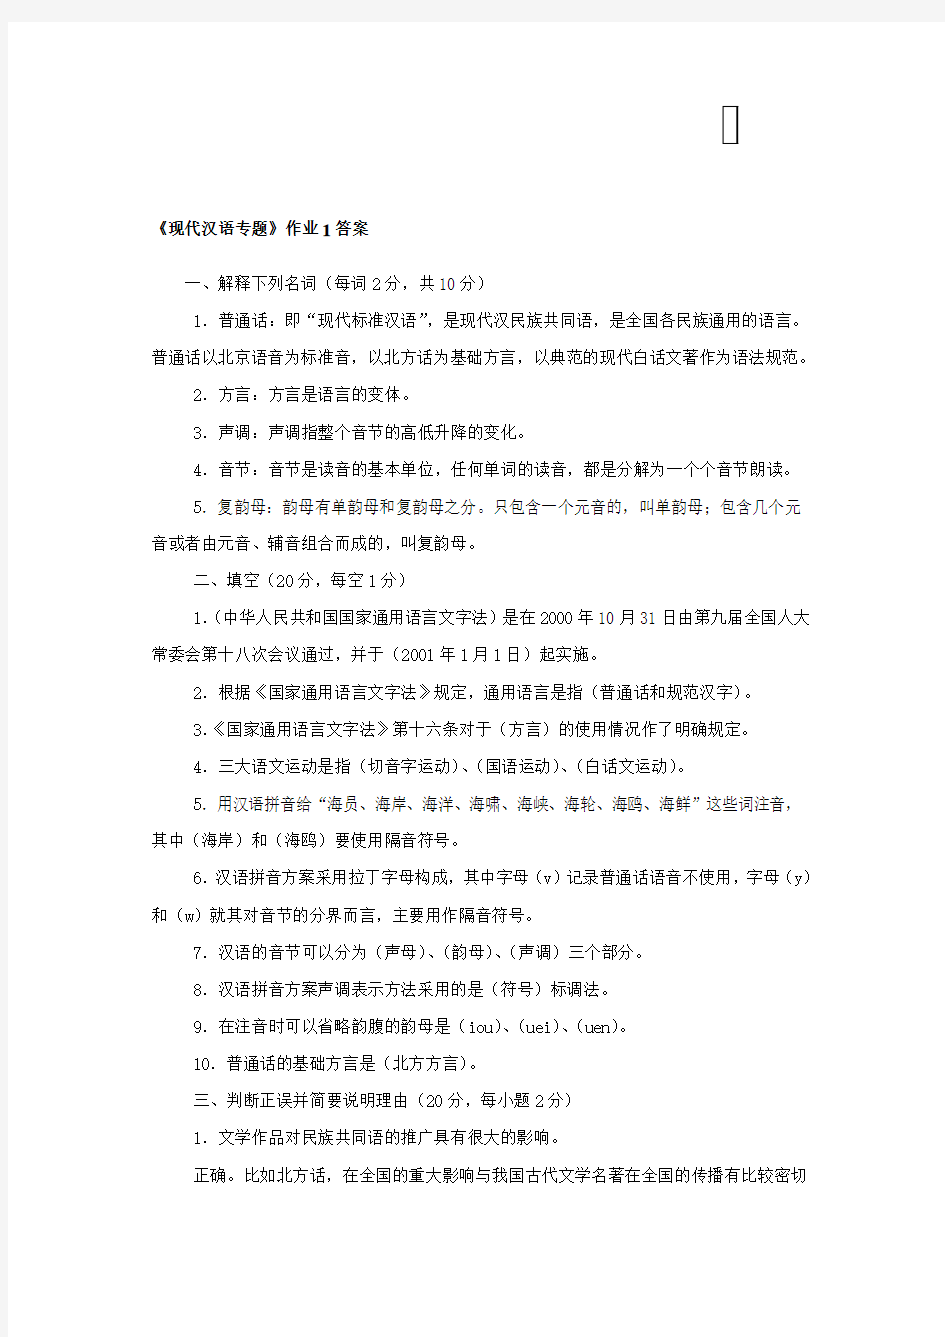 2015年电大《现代汉语专题》形成性考核作业答案